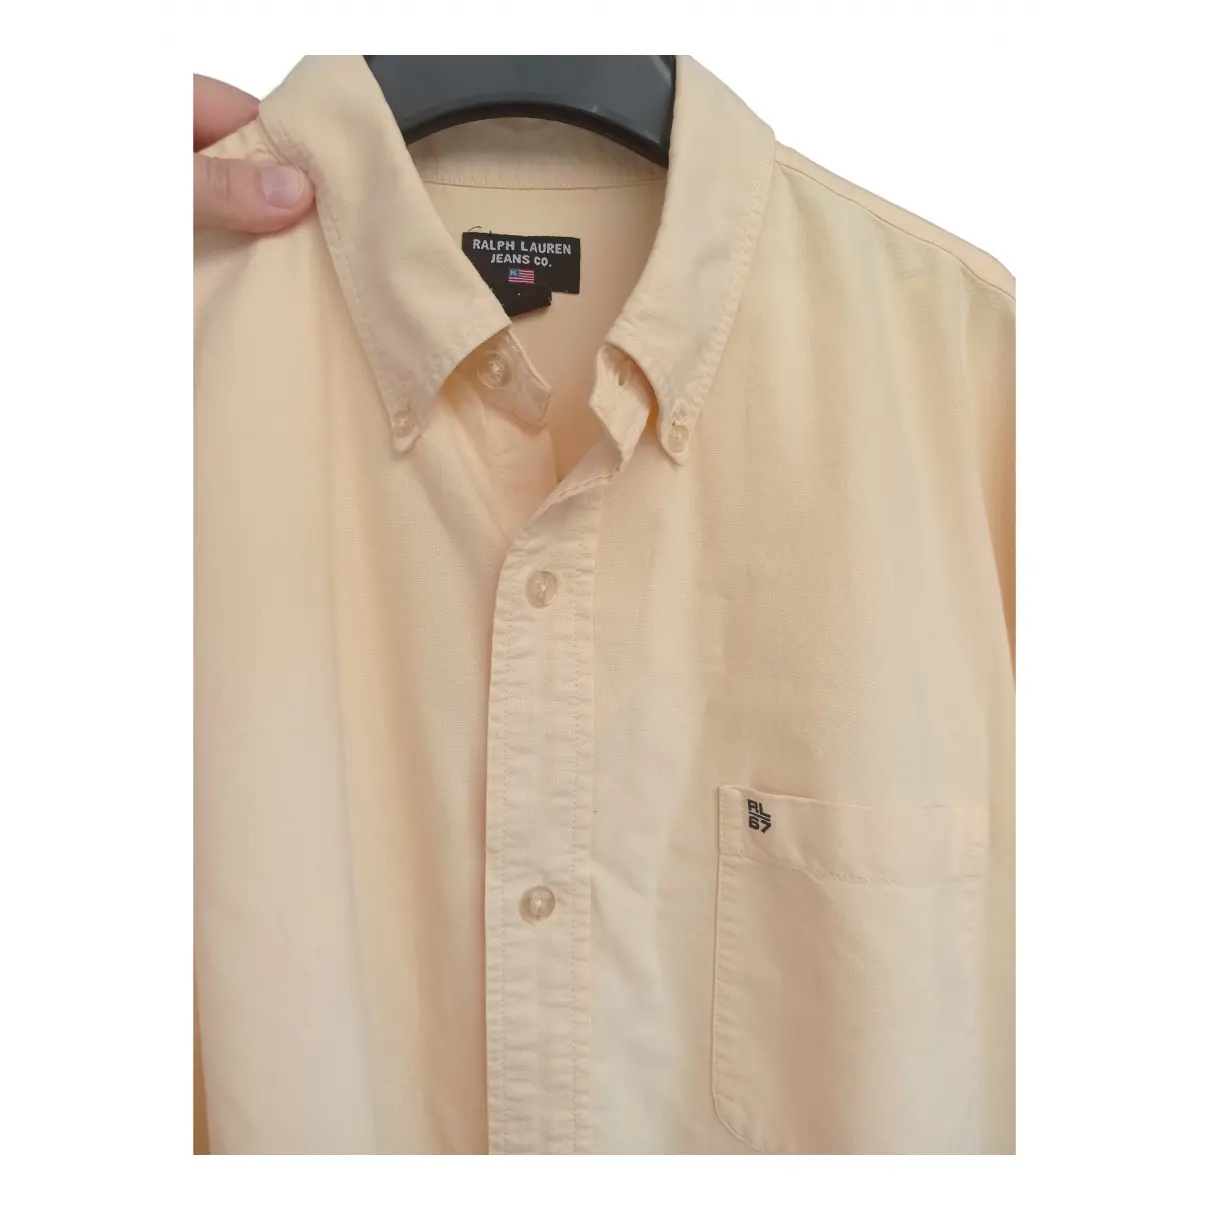 Buy Ralph Lauren Denim & Supply Shirt online